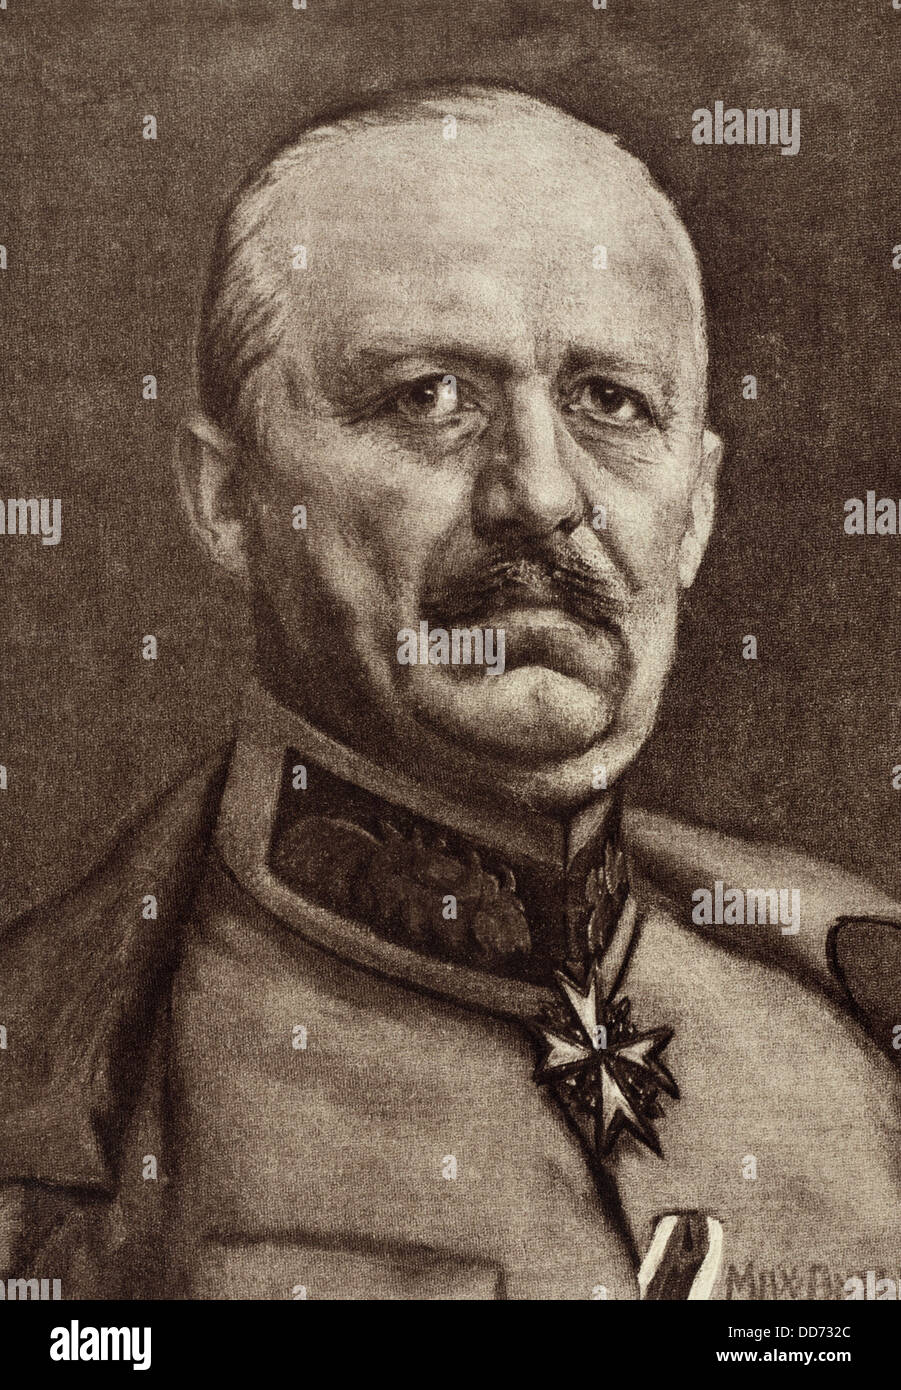 Le général allemand, Erich Ludendorff, chef d'état-major général des armées allemandes à partir de 1916 - 1918. Banque D'Images